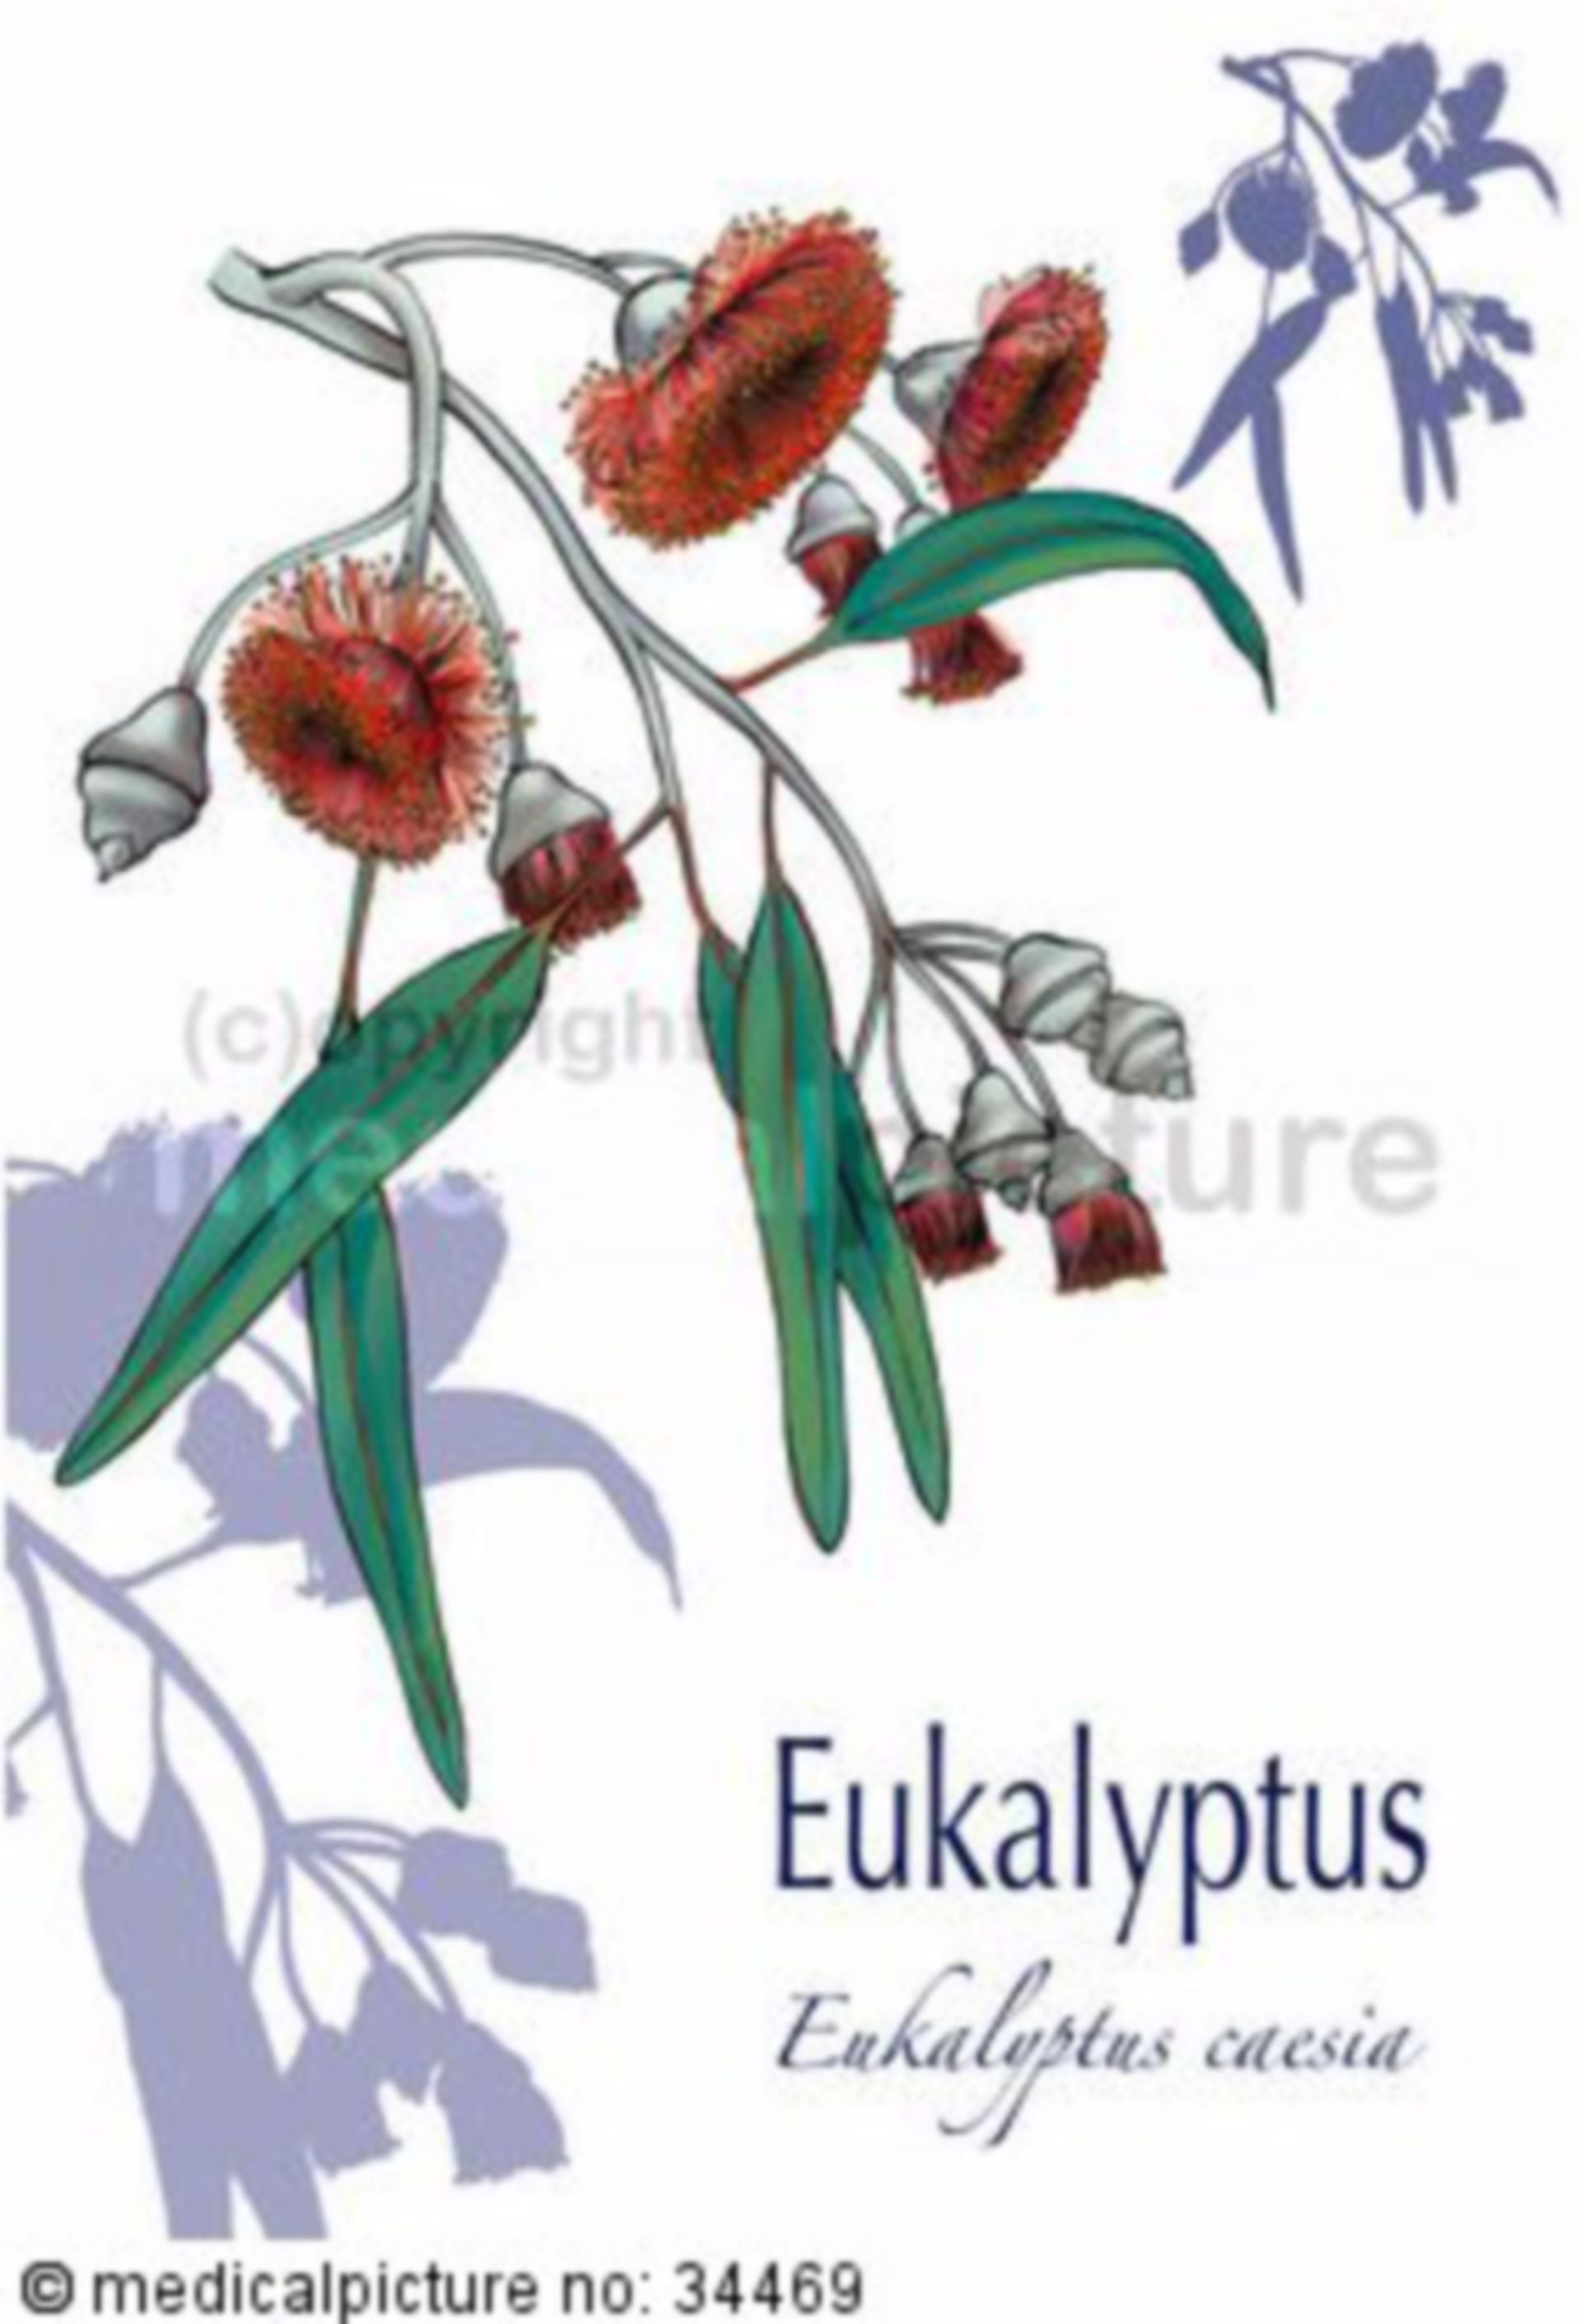  Eukalyptus, Eucalyptus caesia 
